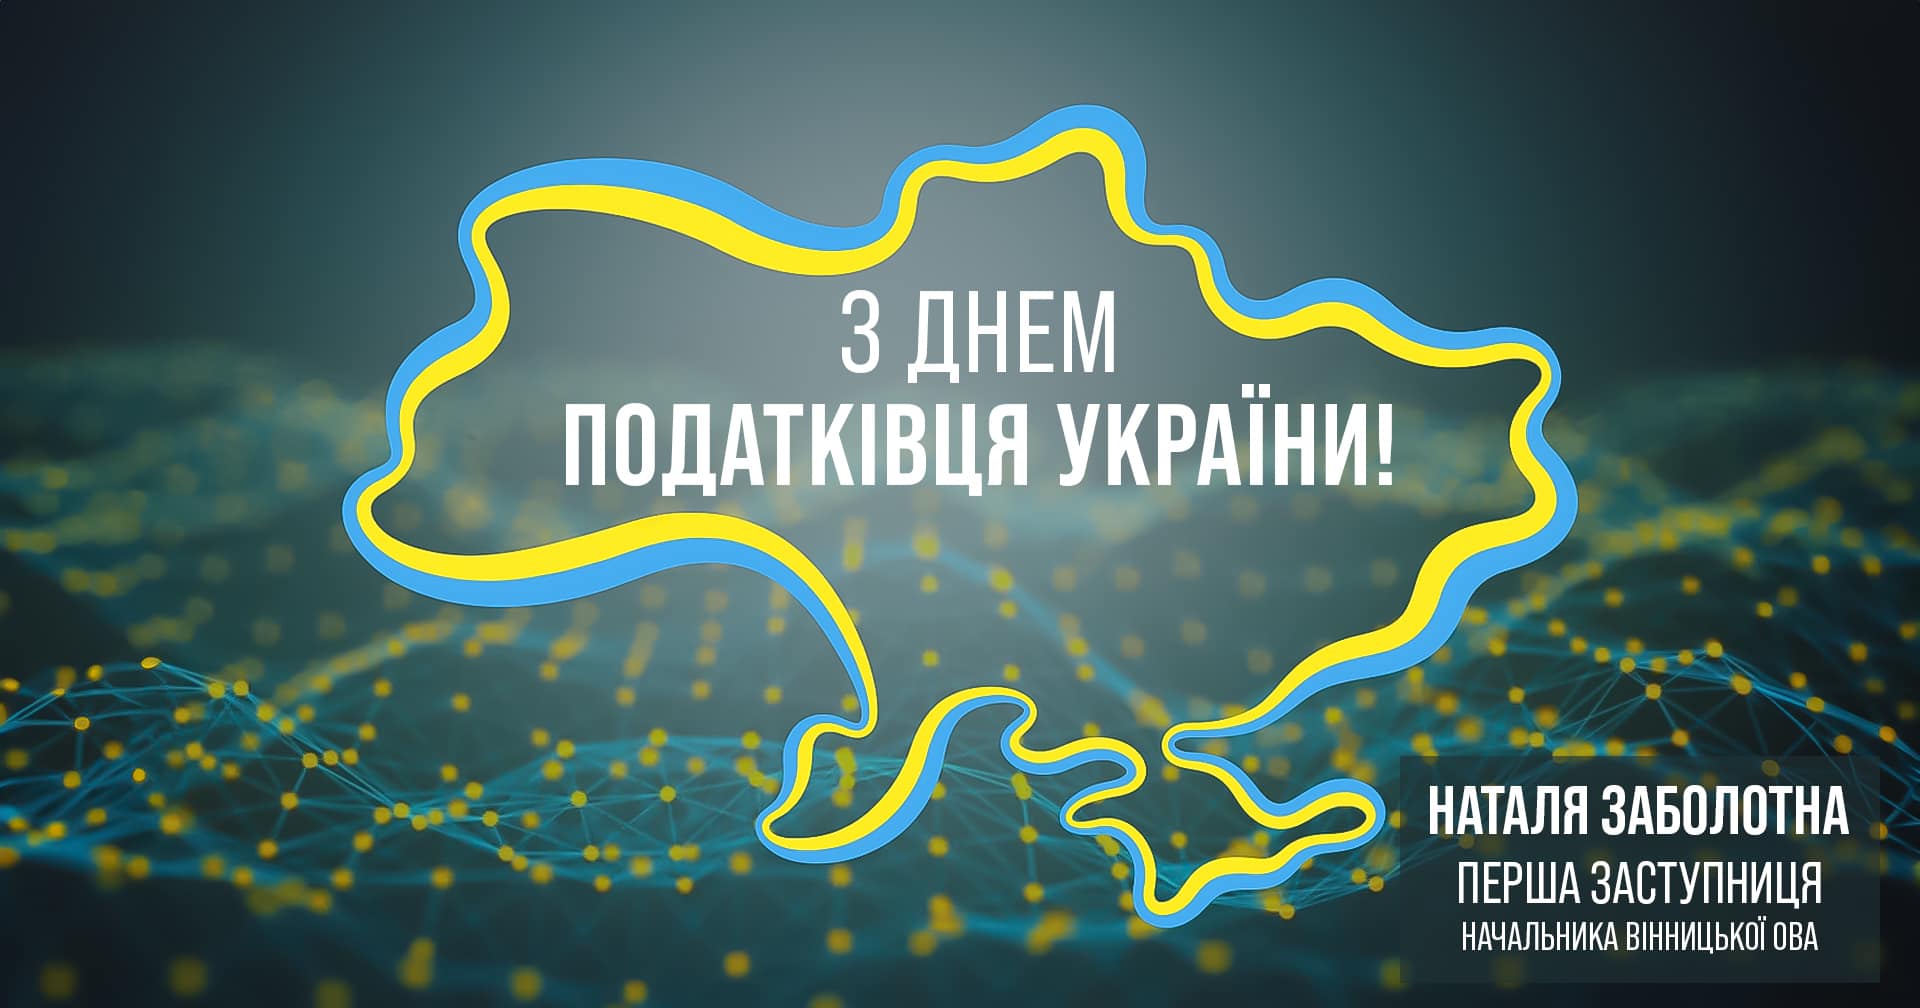 карта України та напис "З Днем податківця України"